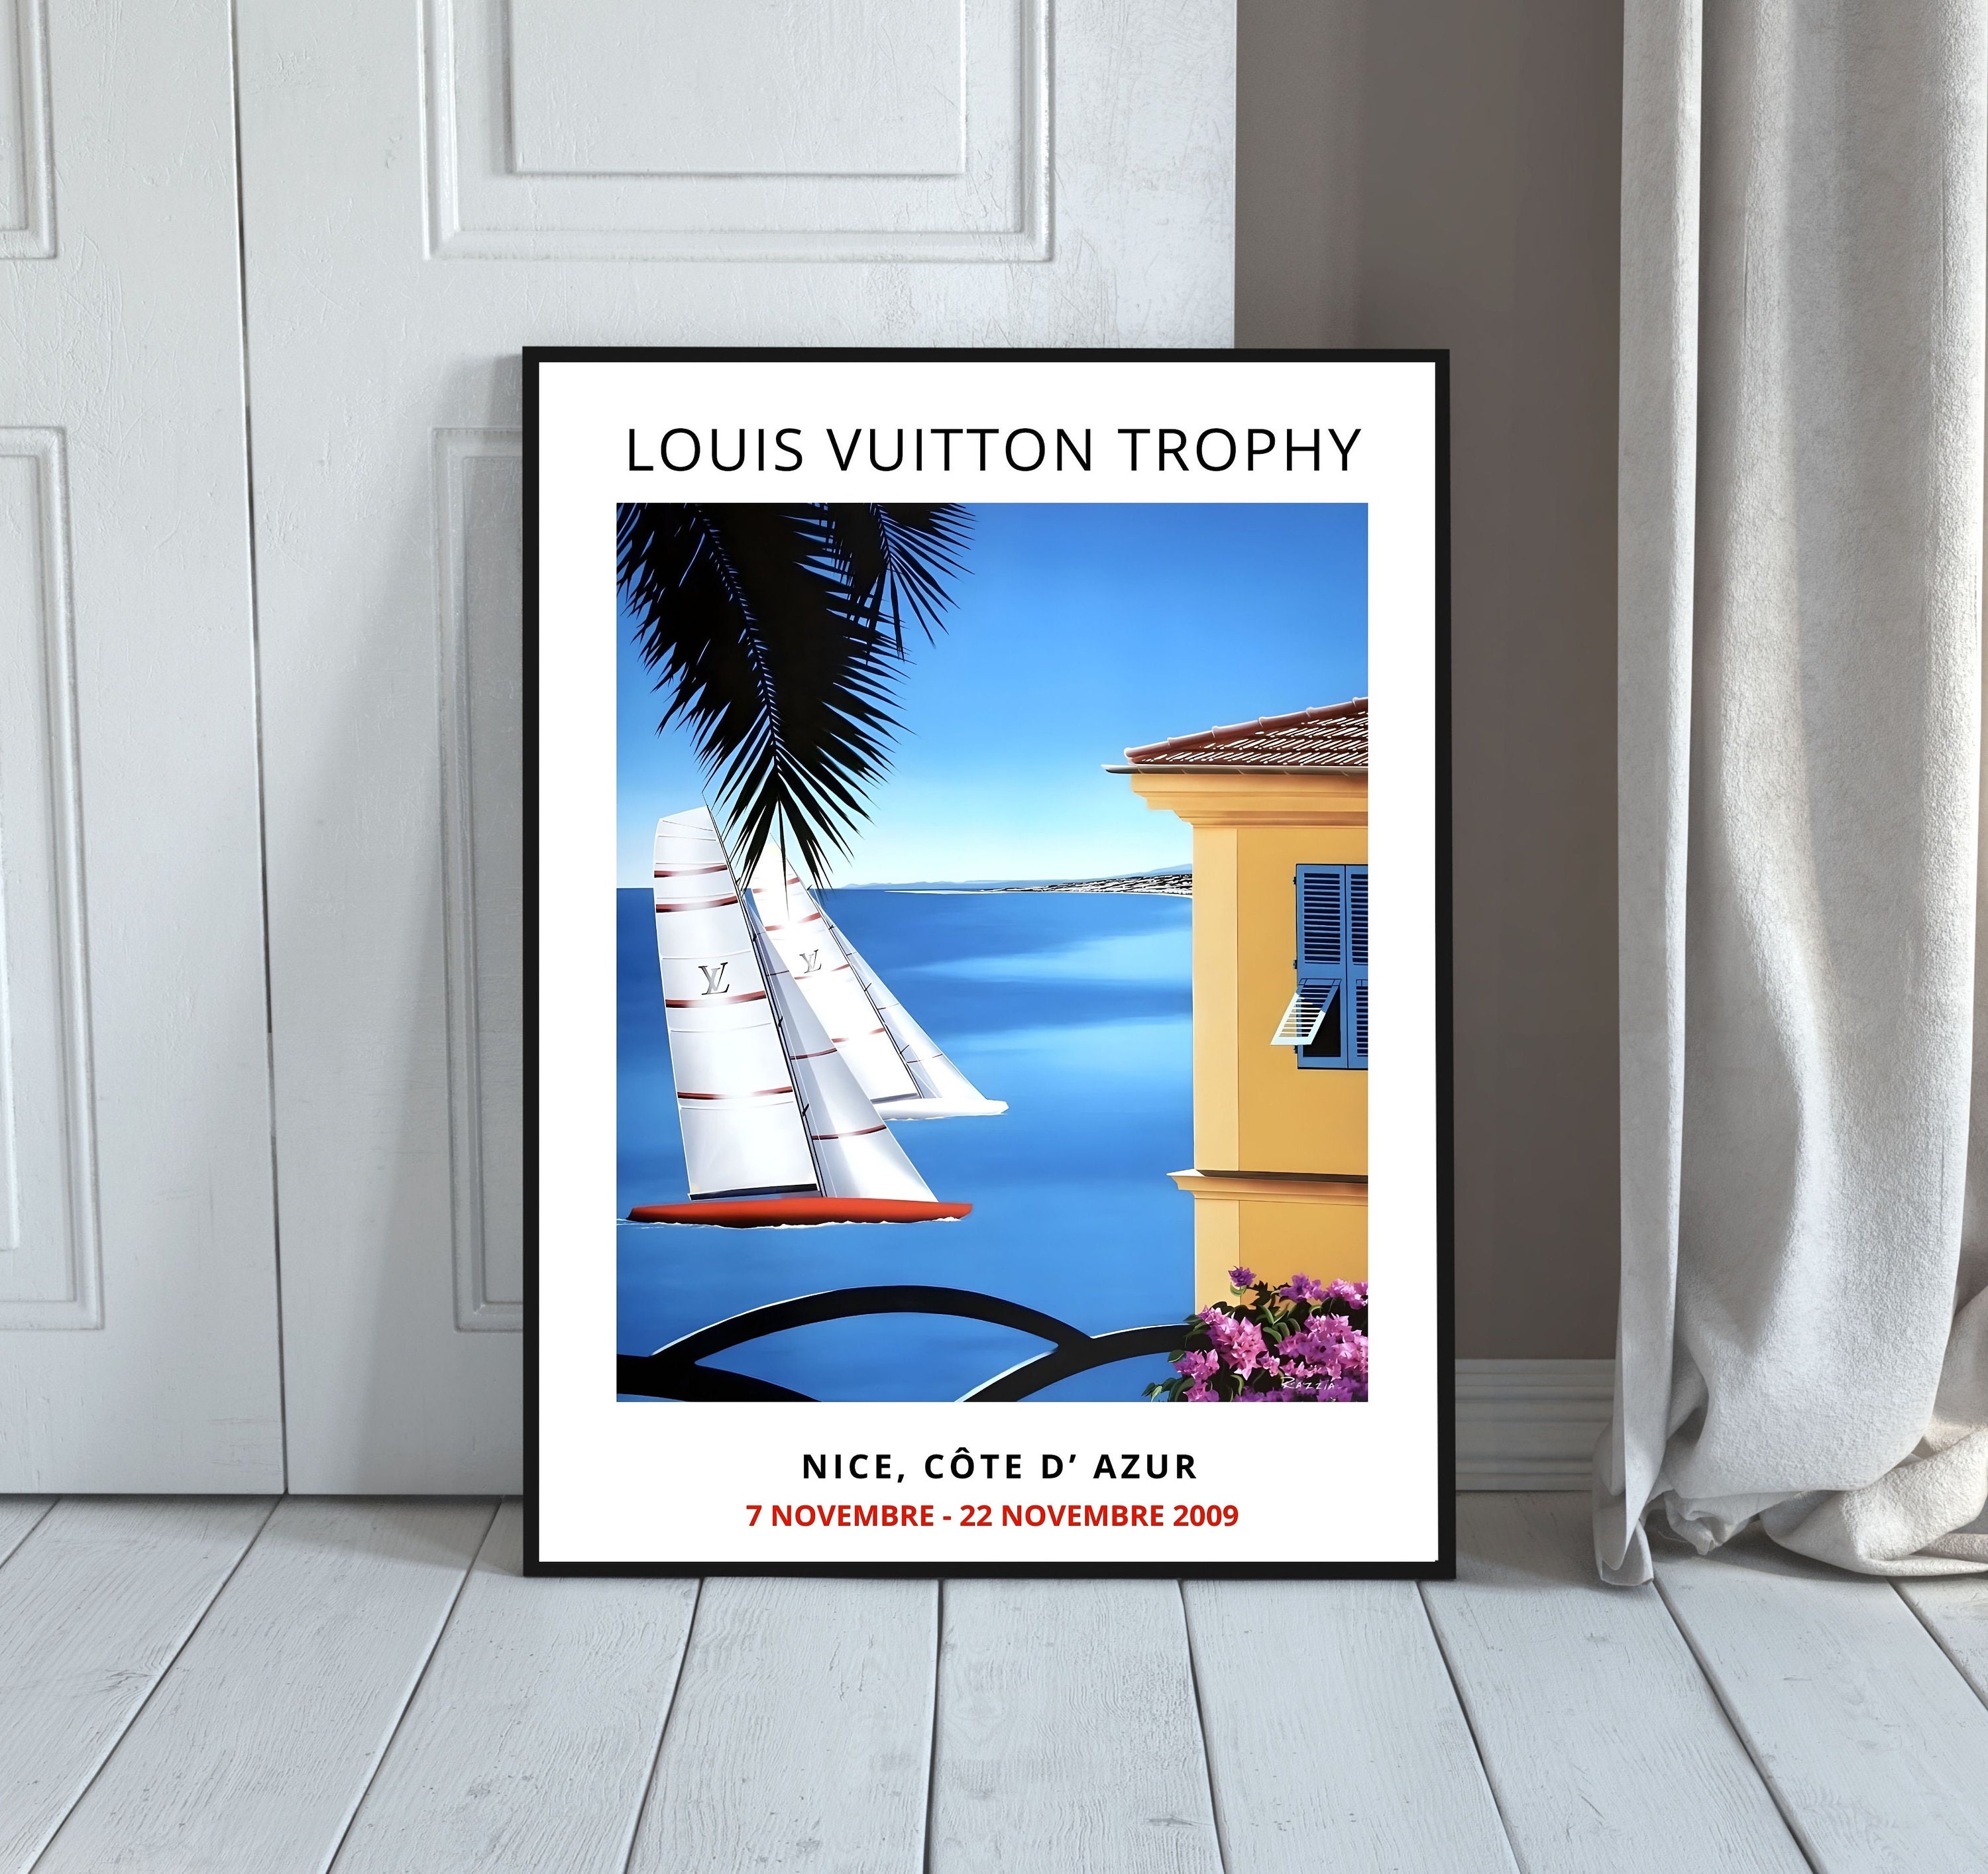 Louis Vuitton Trophy Nice Cote d'Azur